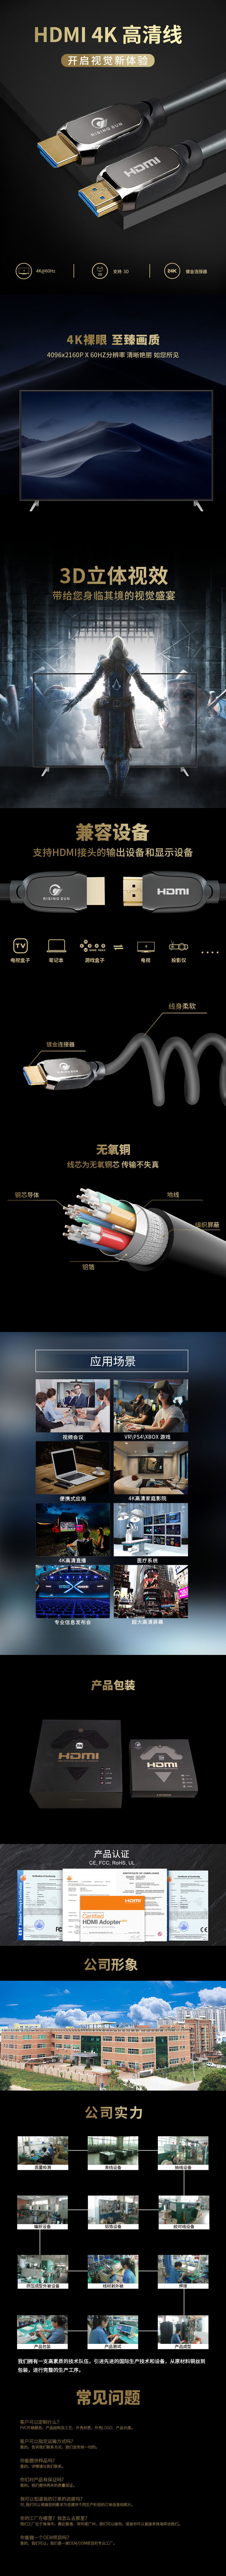 金屬灰 HDMI 2.0中文 拷貝.jpg